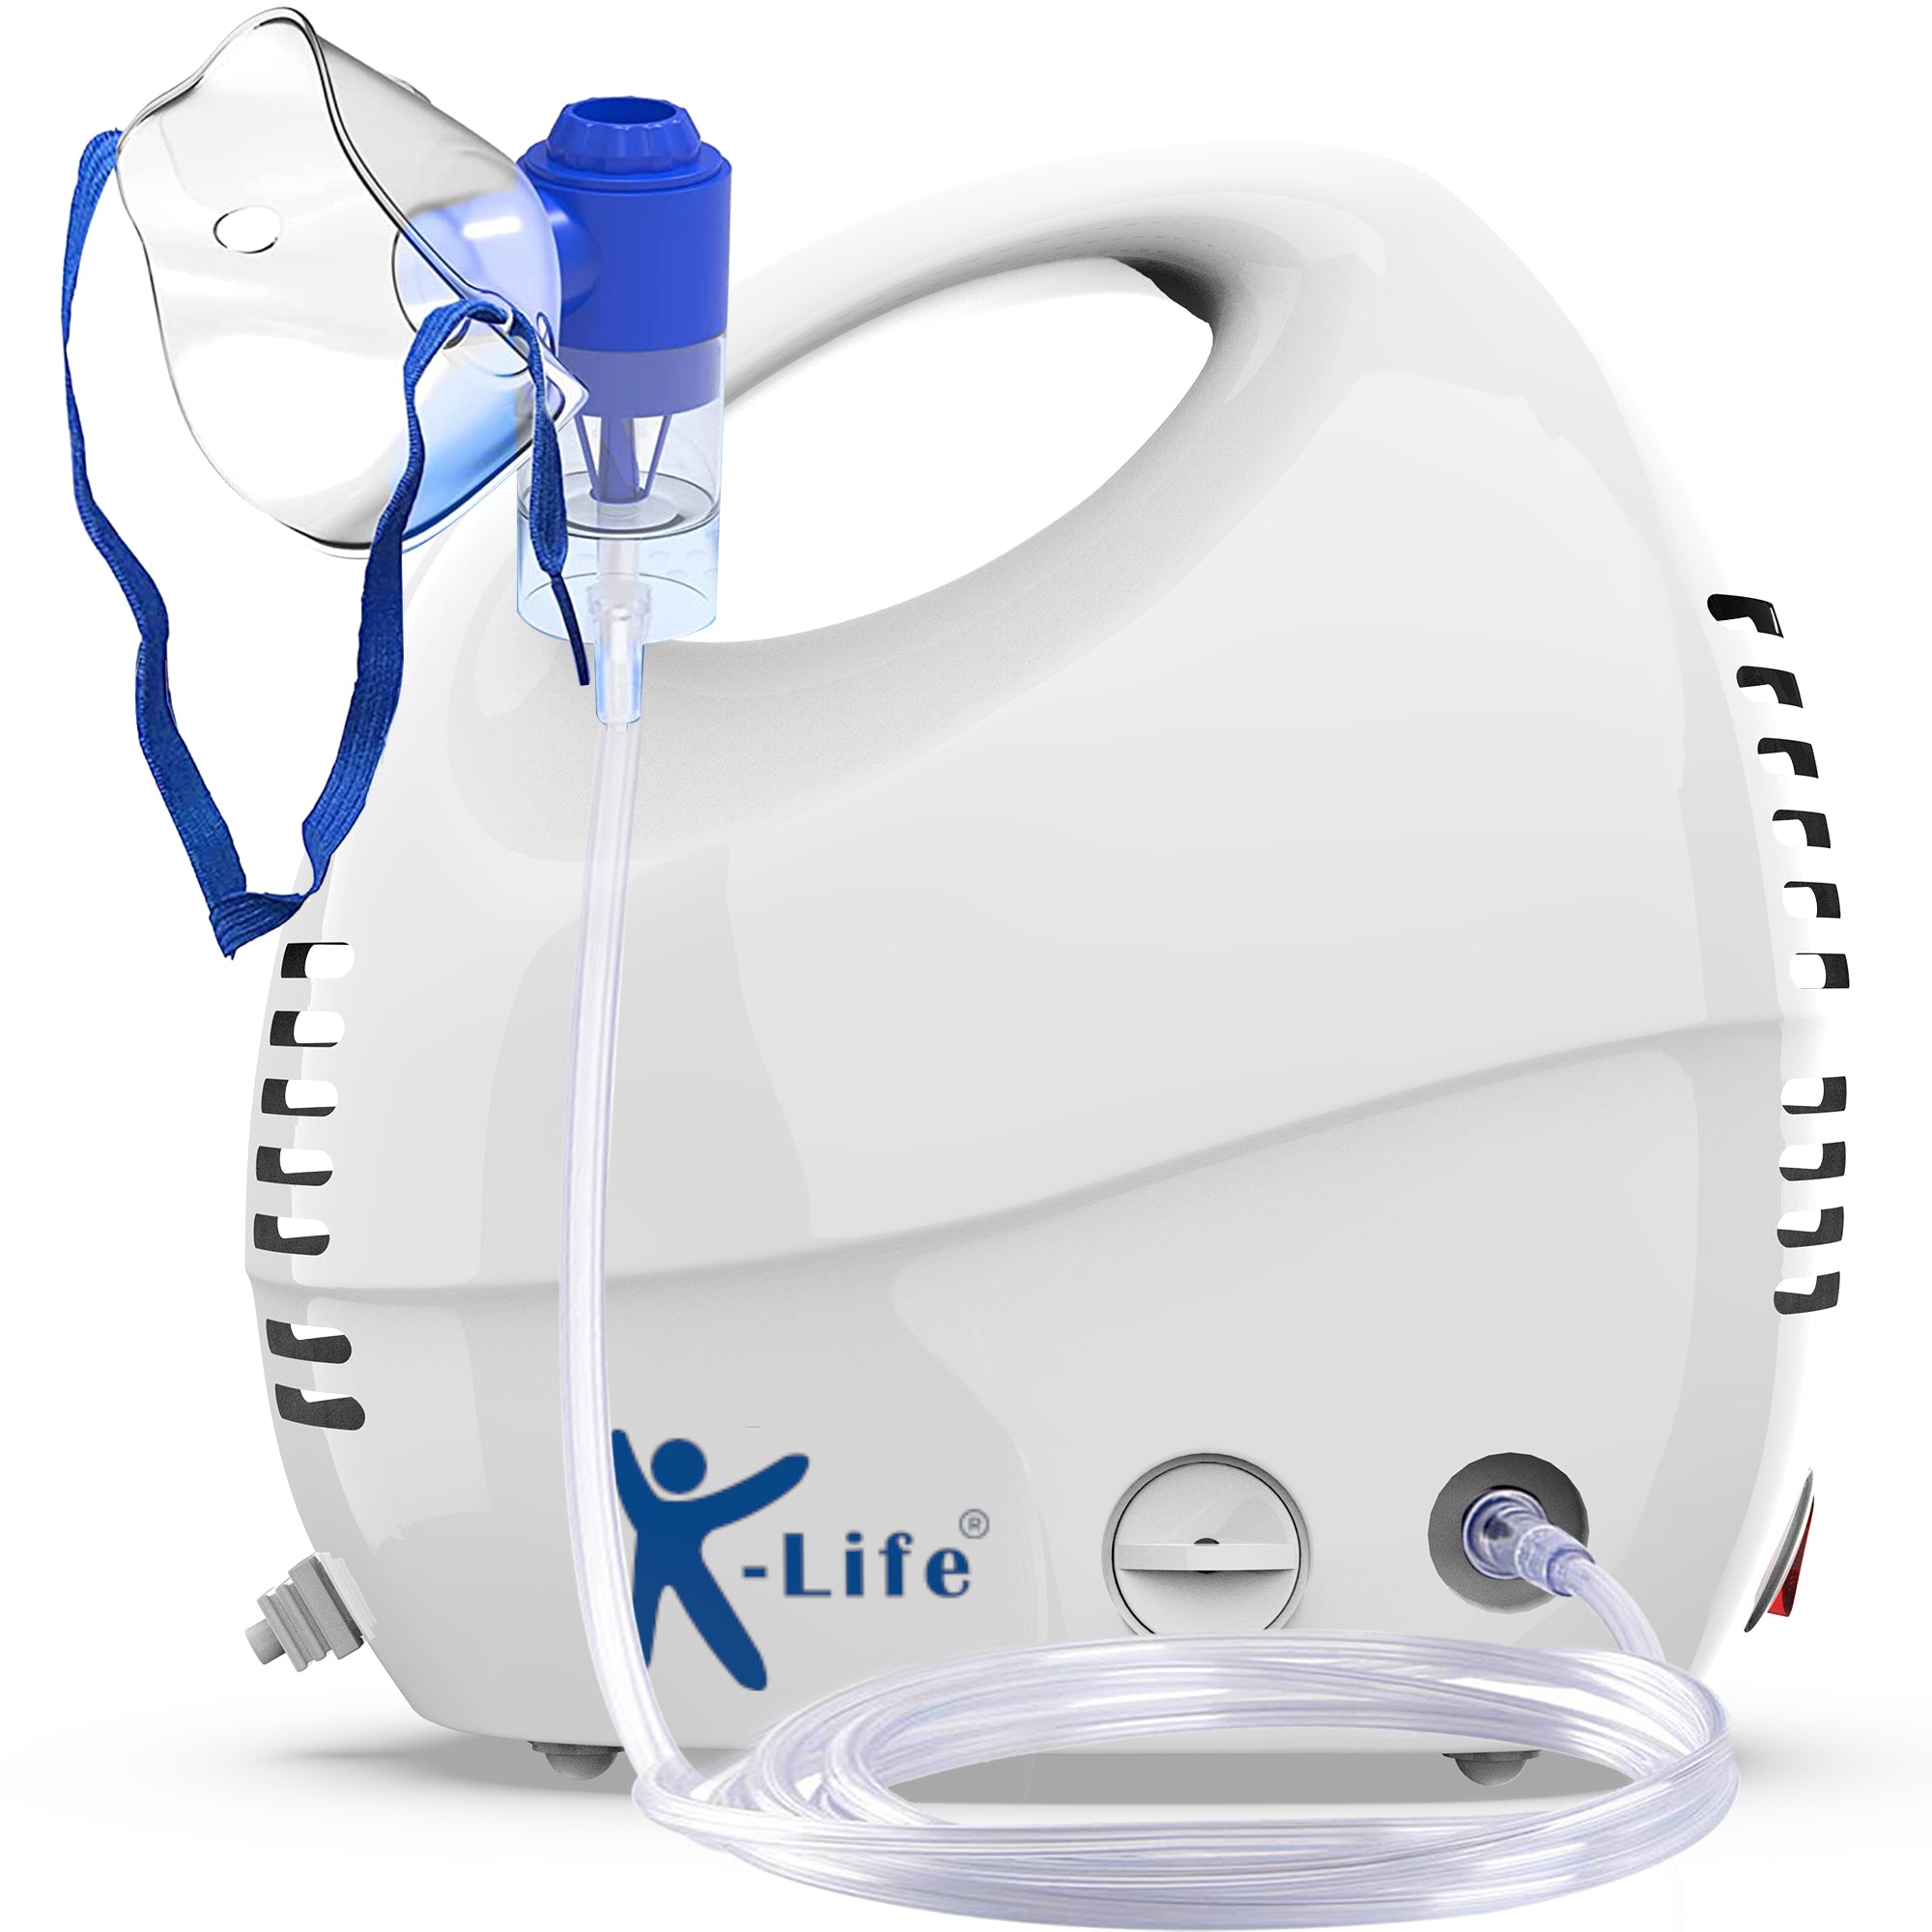 K-Life Neb-103 Nebulizer with free storage pouch